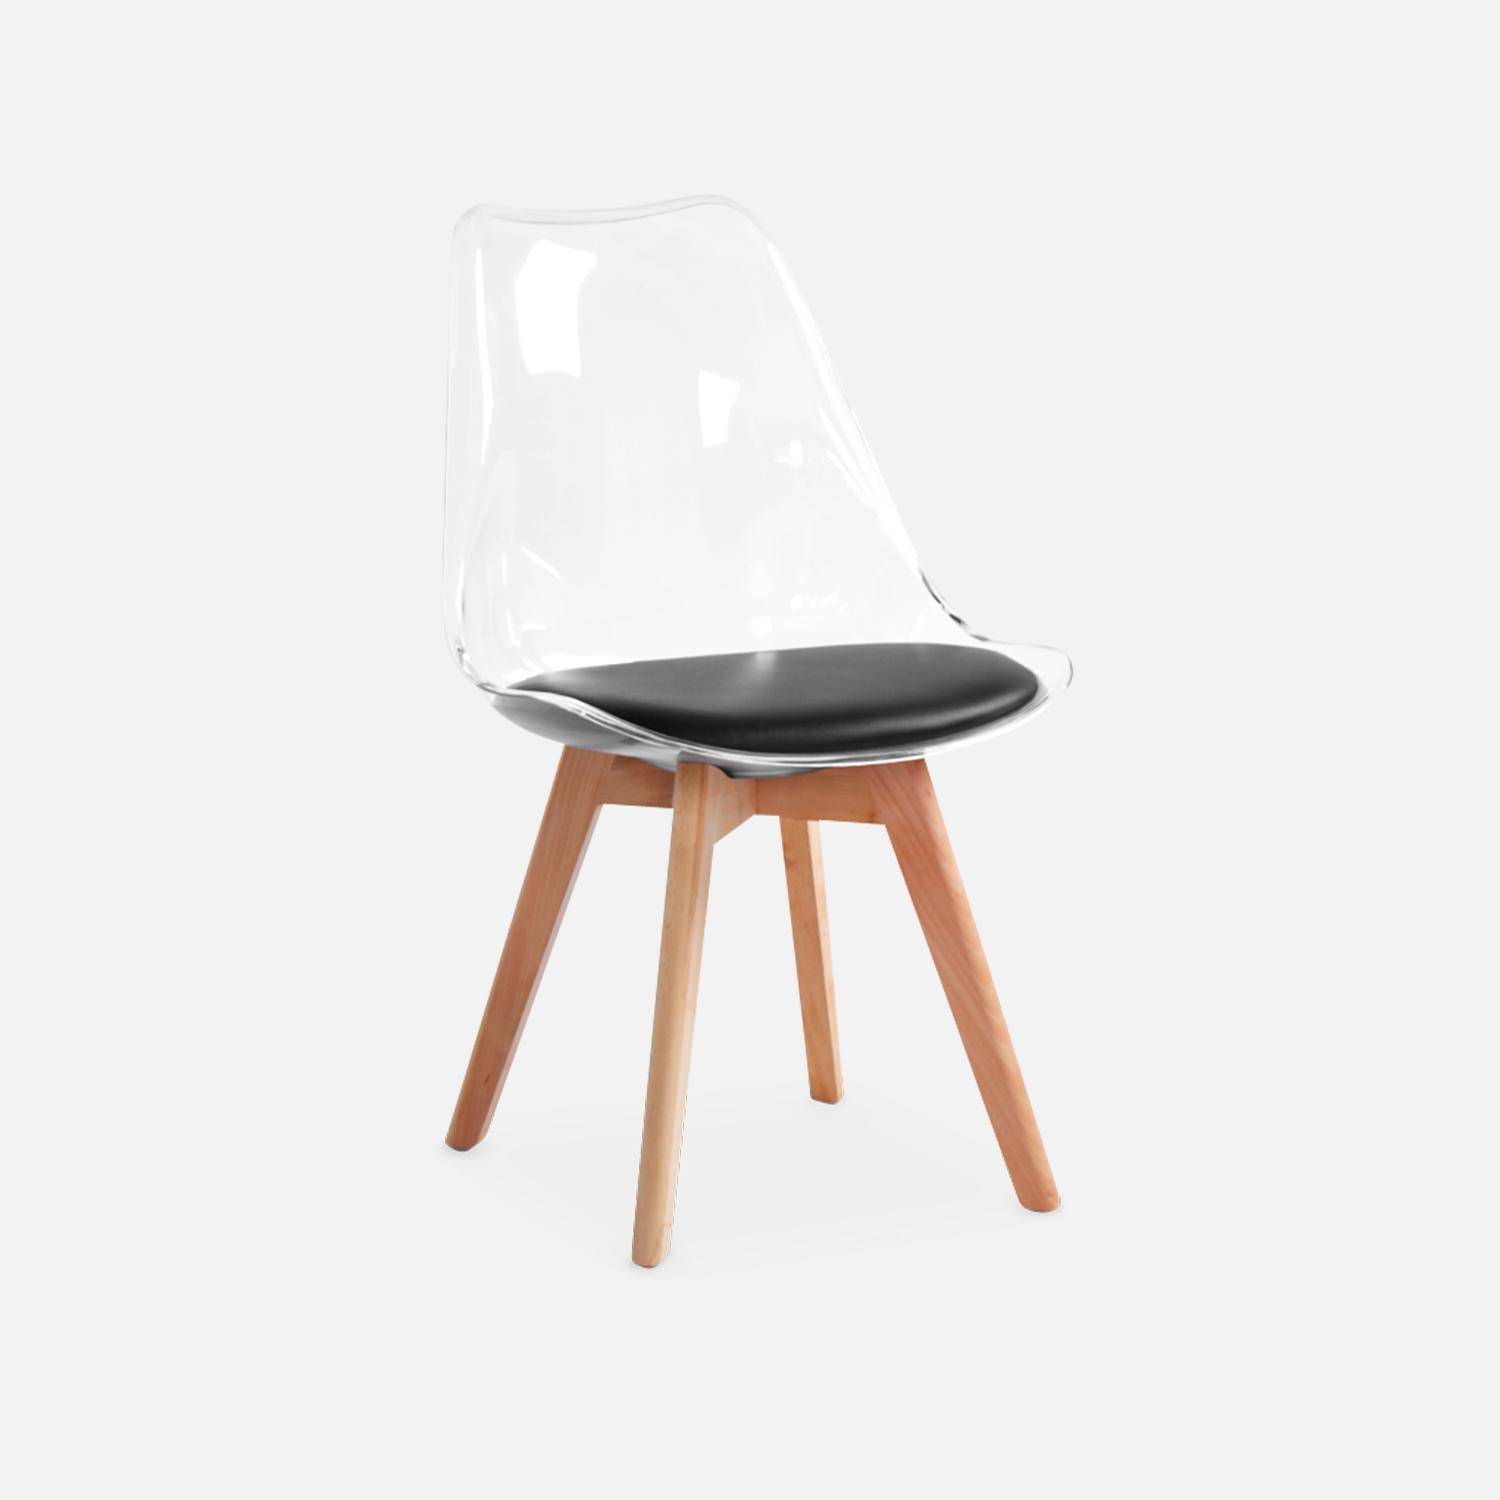 4er Set Stühle im skandinavischen Stil - Lagertha - Holzbeine, Ein Sitz, schwarzes Kissen, transparente Sitzschale Photo6